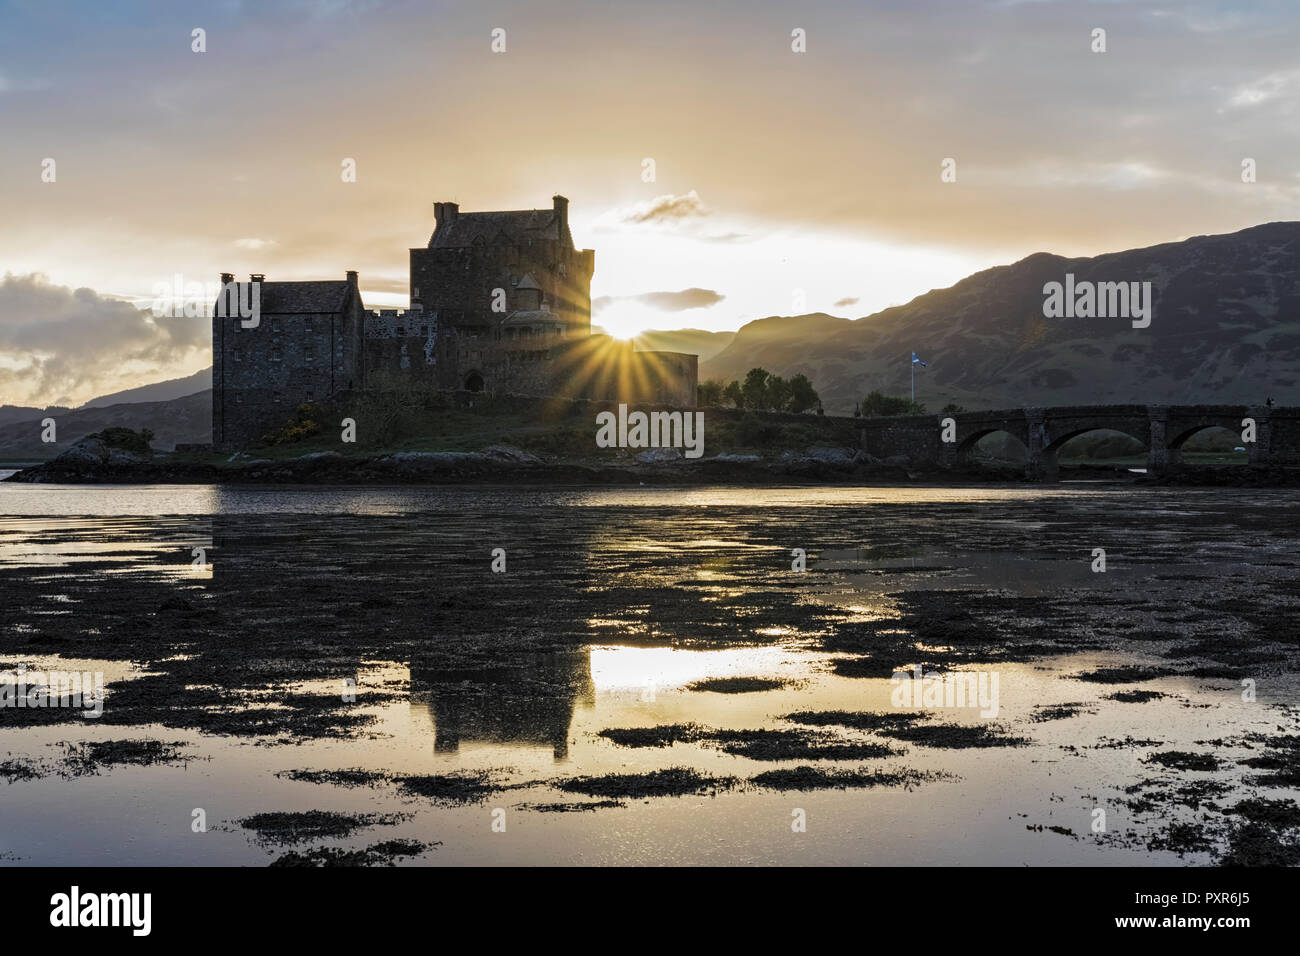 Royaume-uni, Ecosse, Dornie, Loch Duich, le château d'Eilean Donan au coucher du soleil Banque D'Images